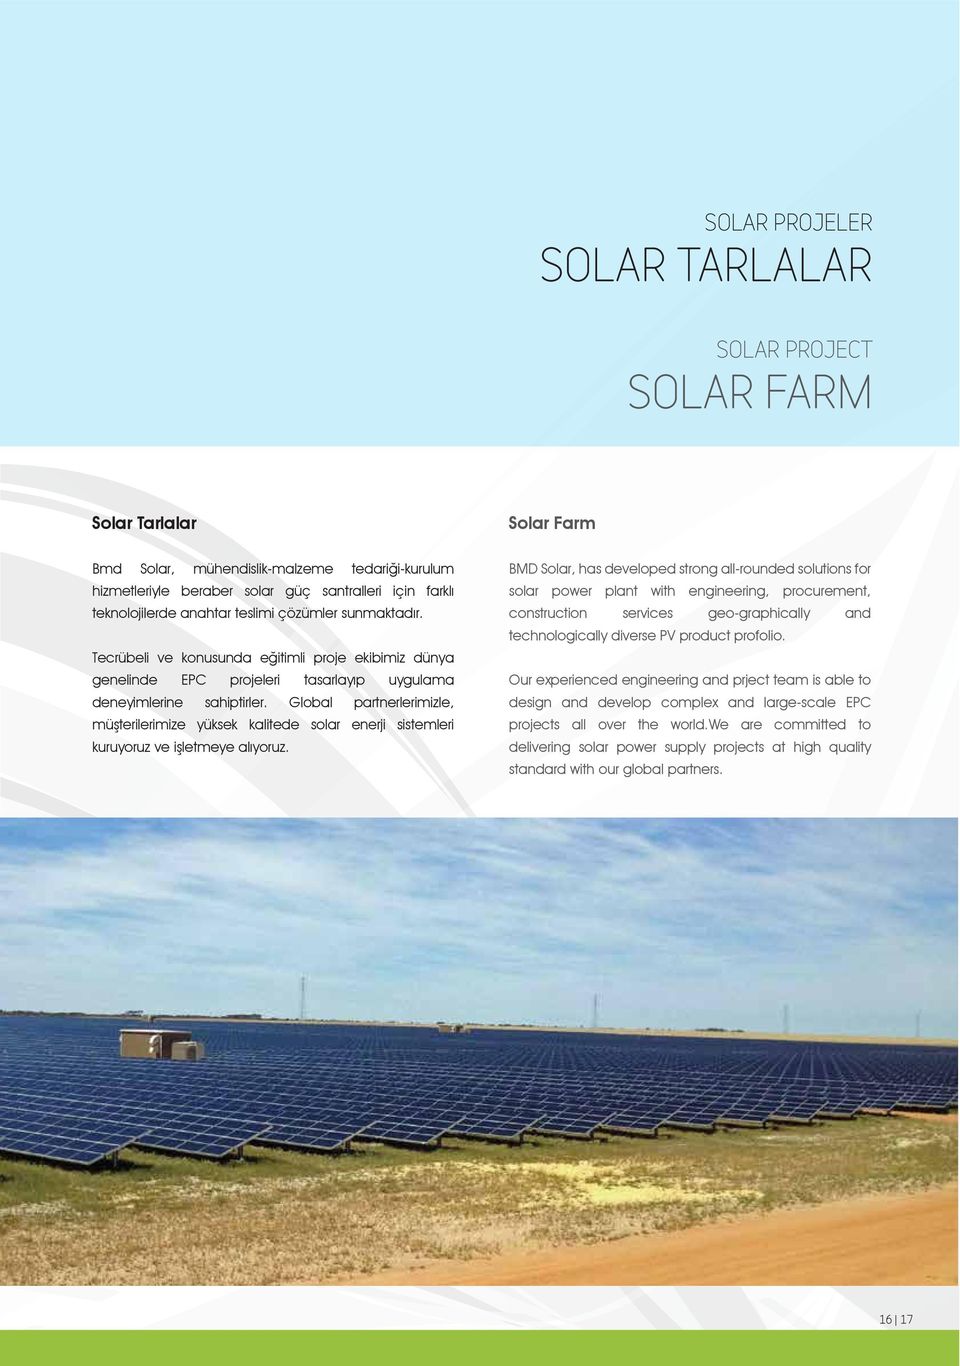 Global partnerlerimizle, müşterilerimize yüksek kalitede solar enerji sistemleri kuruyoruz ve işletmeye alıyoruz.